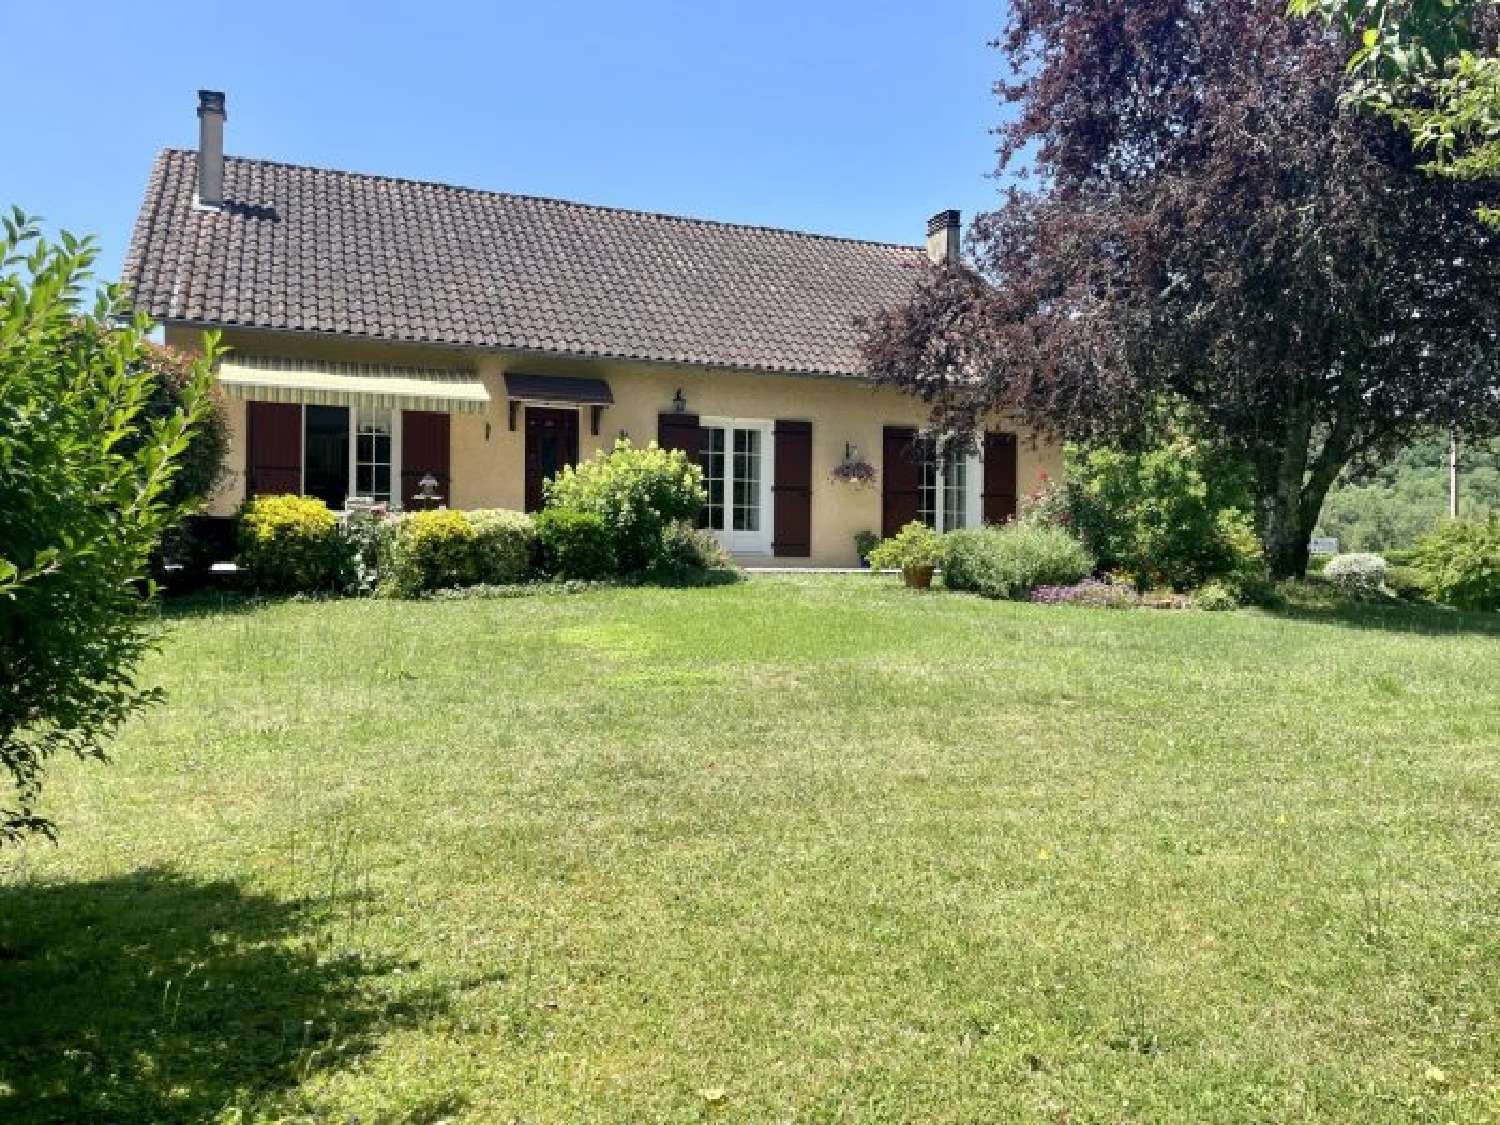  à vendre maison Brantôme Dordogne 5